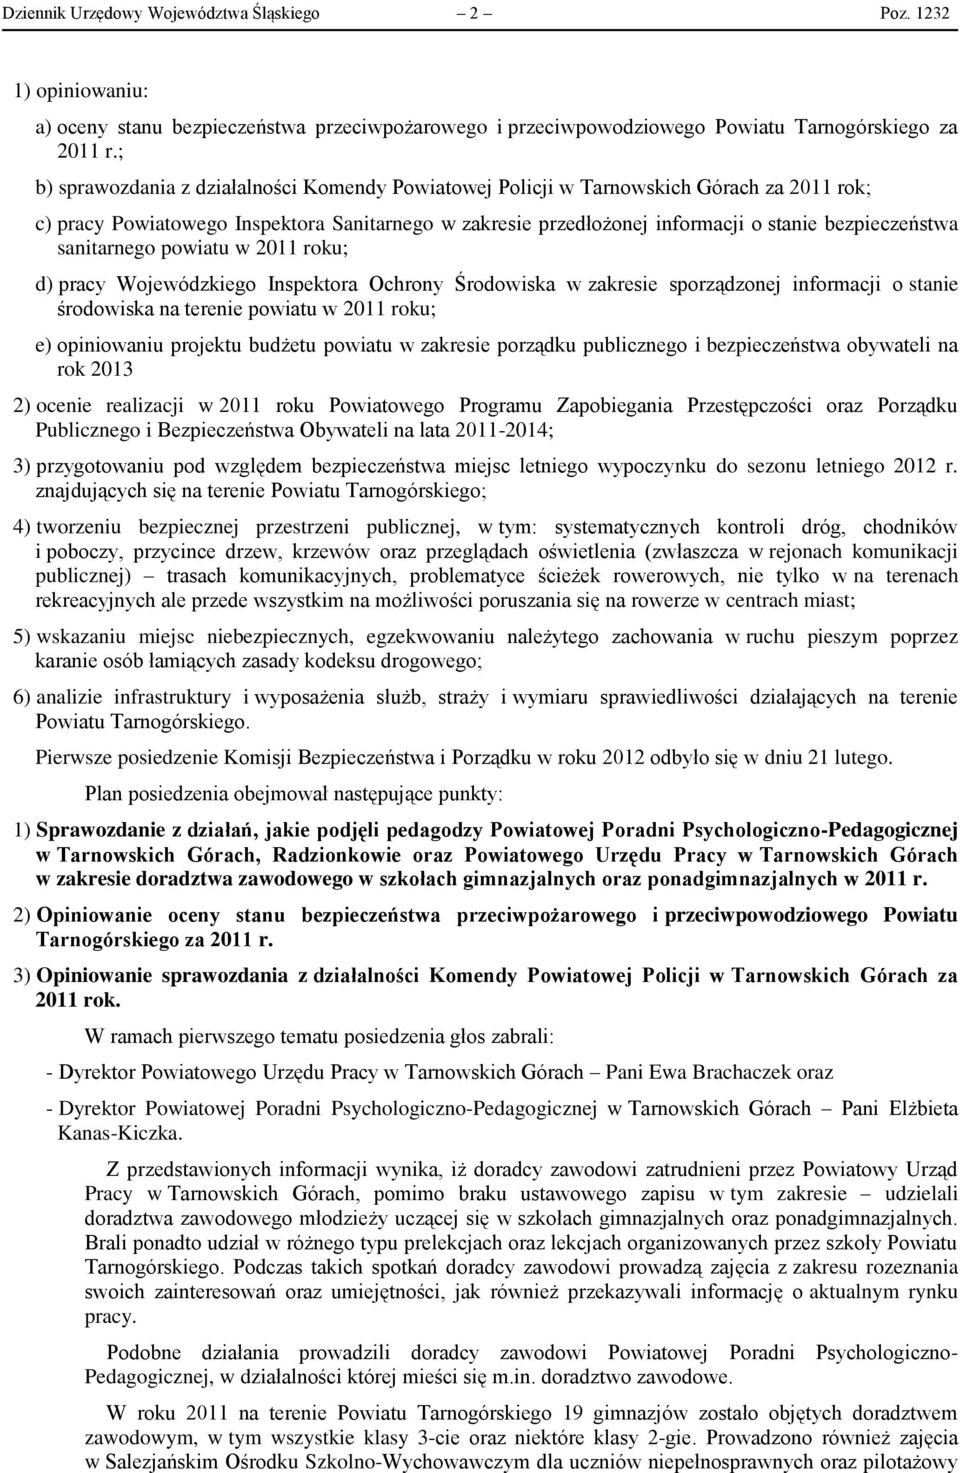 sanitarnego powiatu w 2011 roku; d) pracy Wojewódzkiego Inspektora Ochrony Środowiska w zakresie sporządzonej informacji o stanie środowiska na terenie powiatu w 2011 roku; e) opiniowaniu projektu